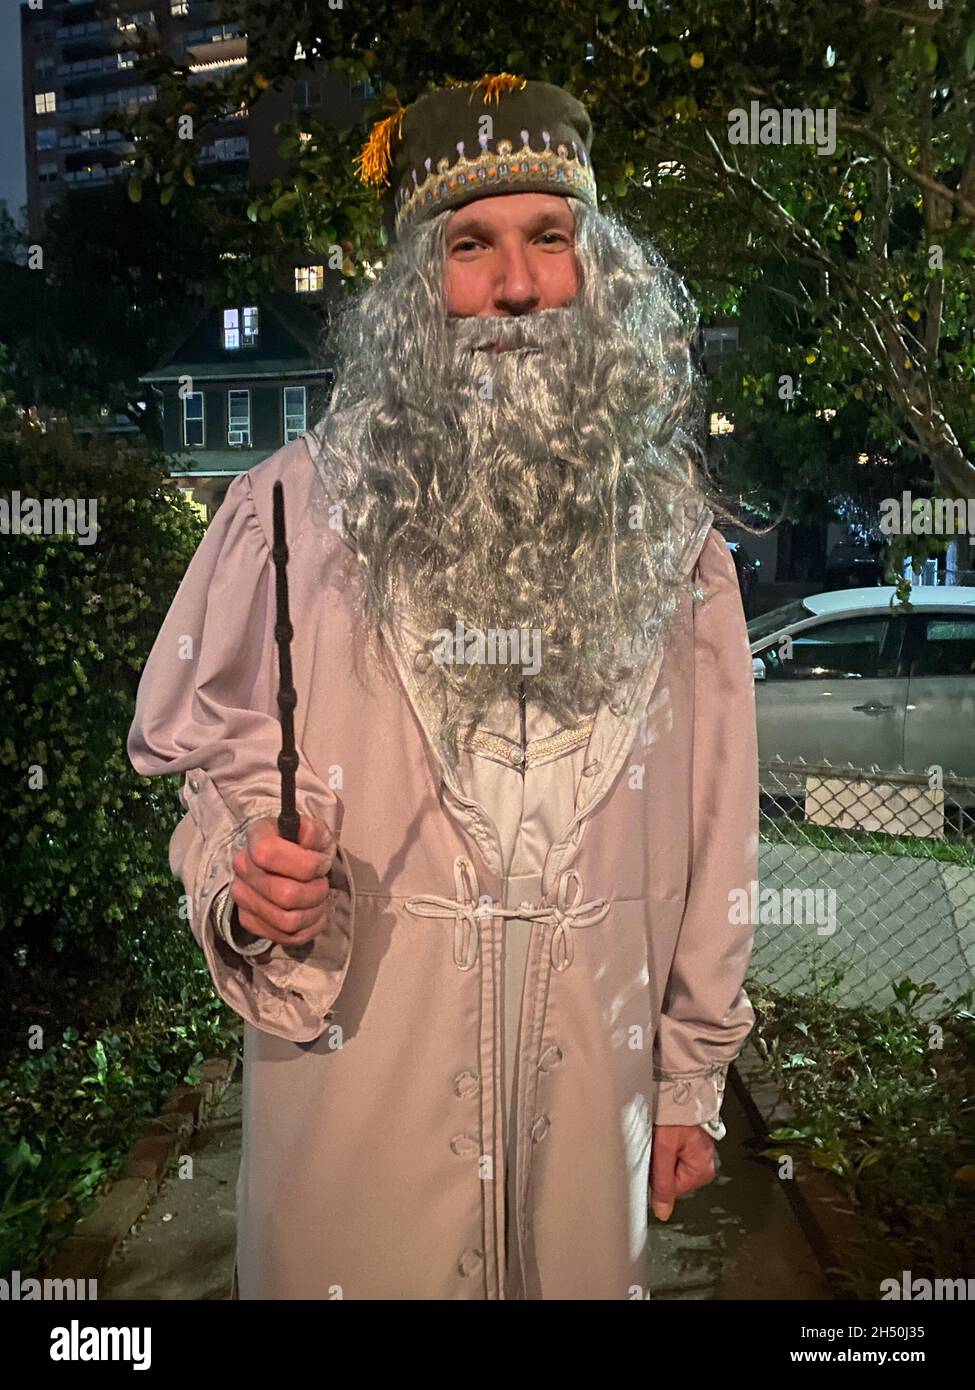 Porträt eines Mannes, der als Zauberer Dumbledore aus den Harry Potter Büchern zu einer Halloween-Party geht. Evening, Brooklyn, NY. Stockfoto